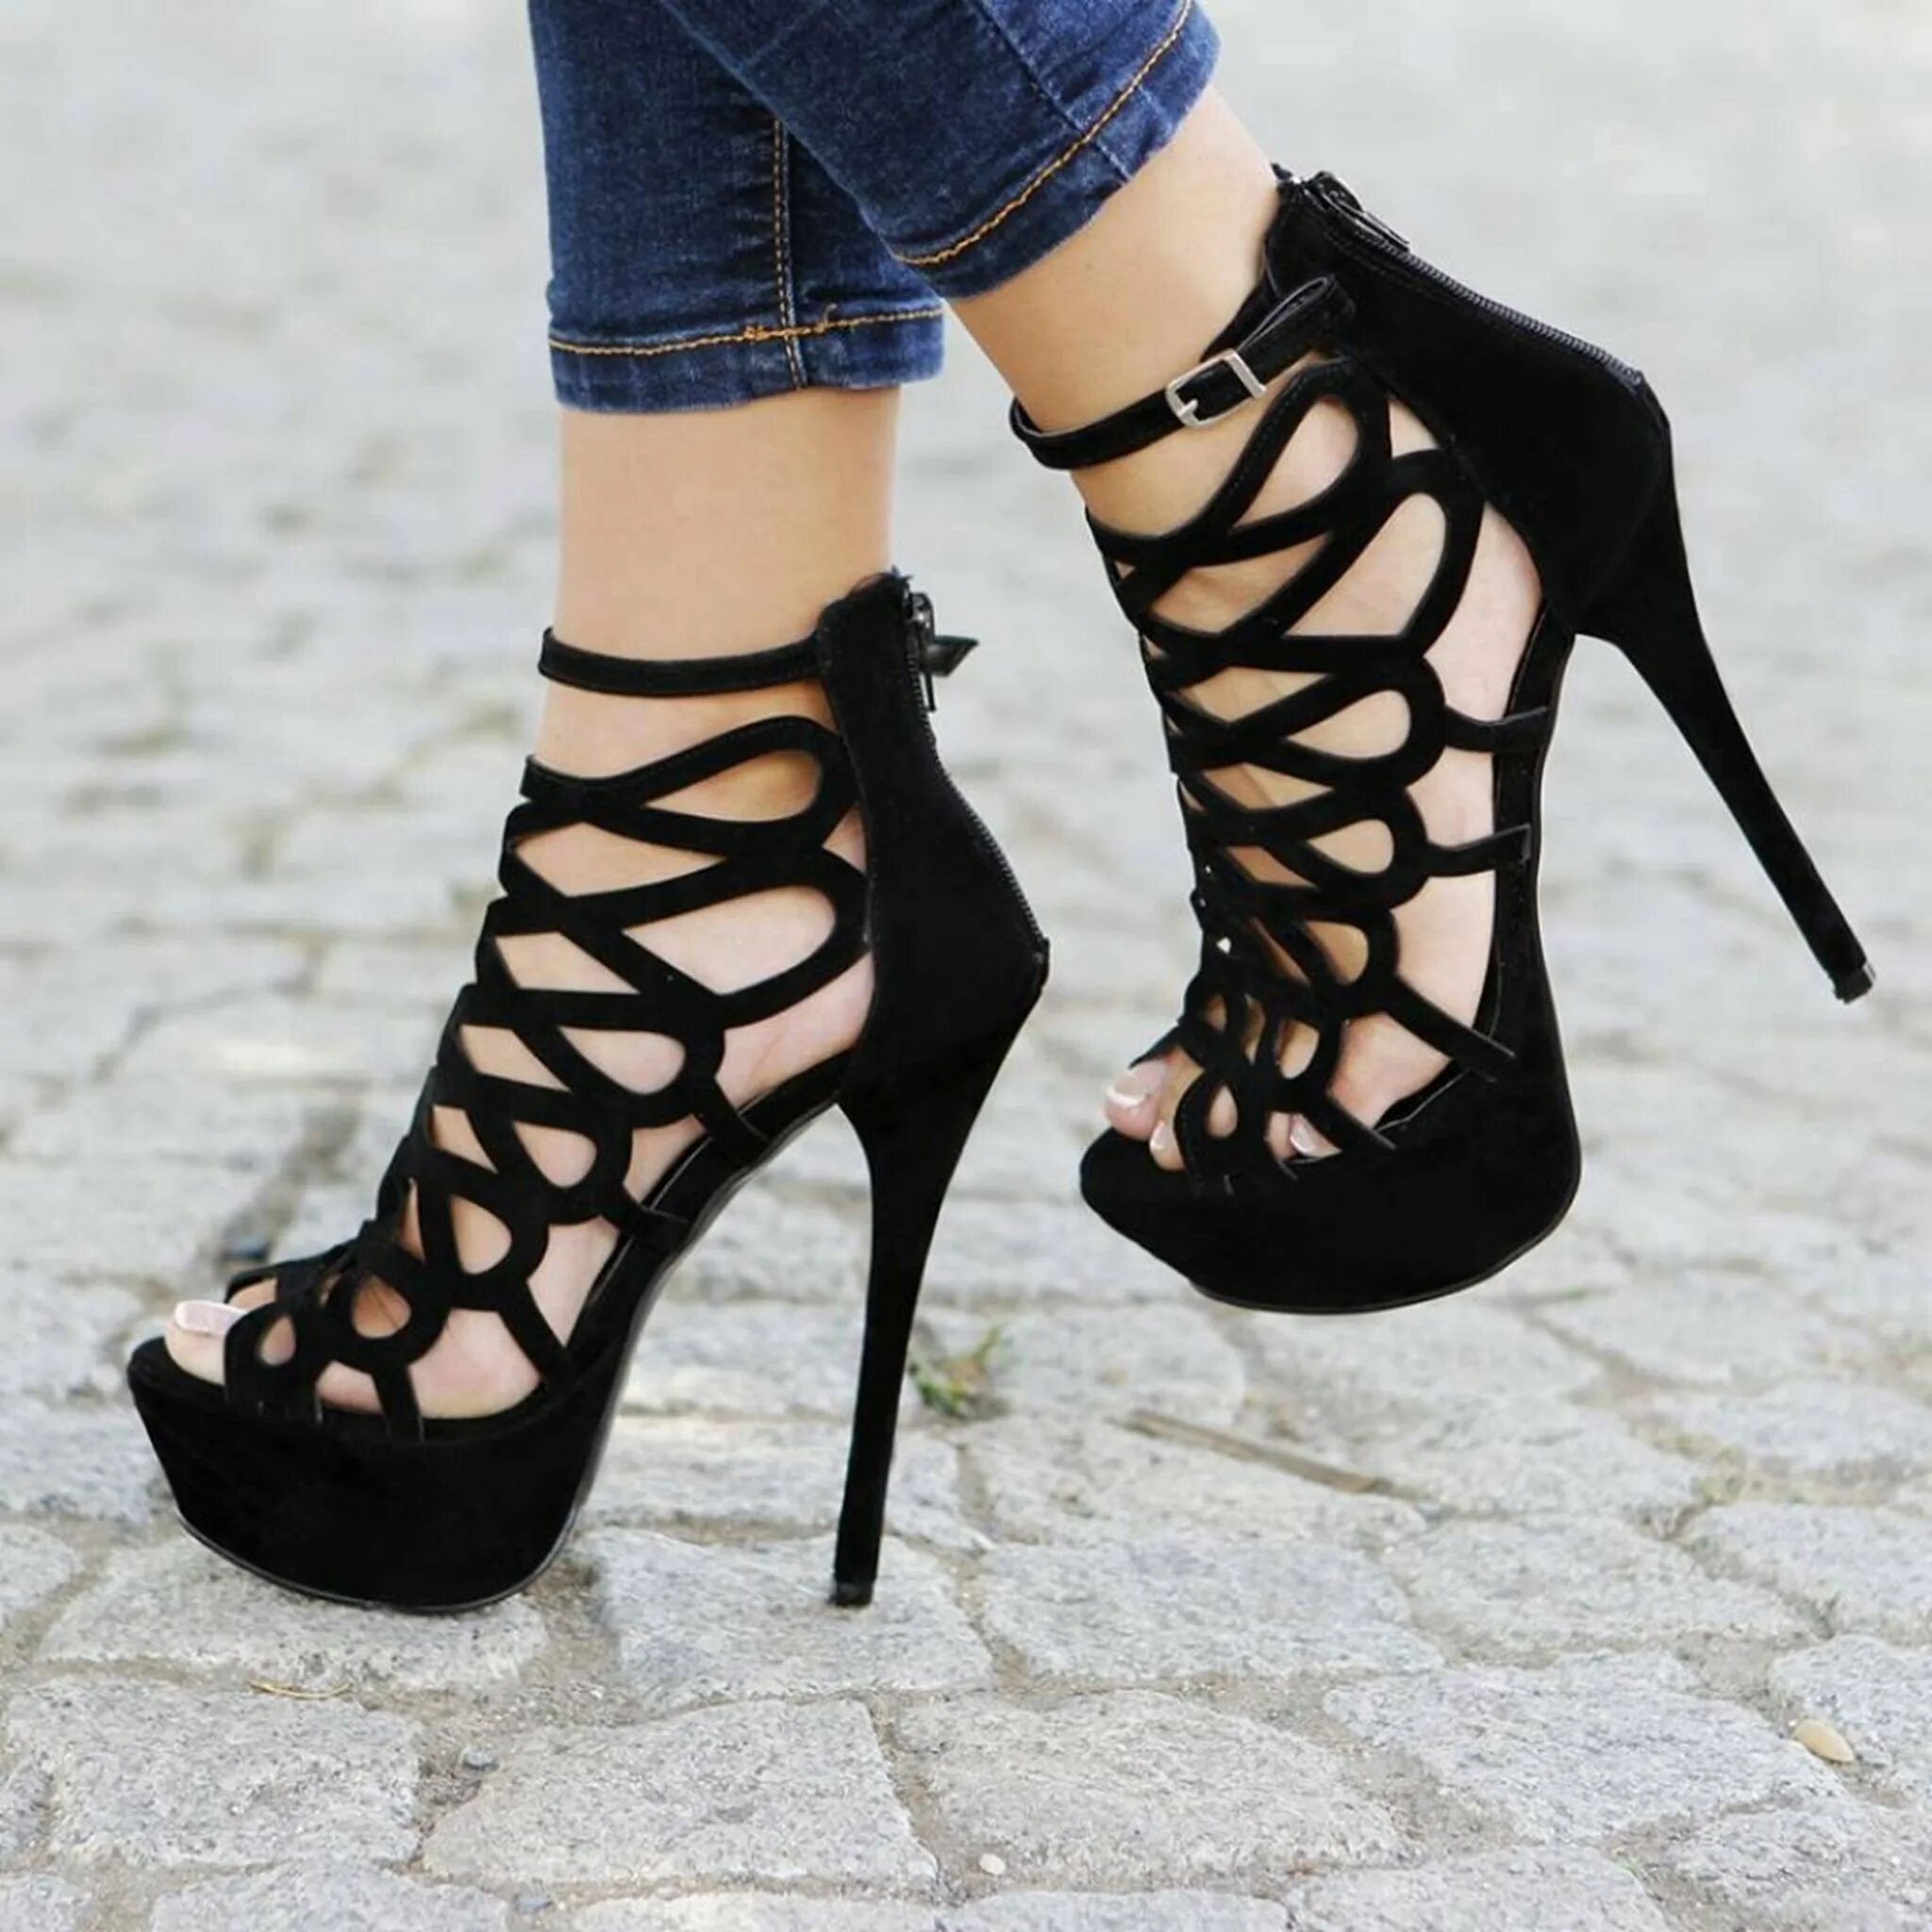 Black high heels. Туфли на каблуке. Туфли женские на каблуке. Женские туфли на высоком каблуке. Босоножки на шпильке и платформе.